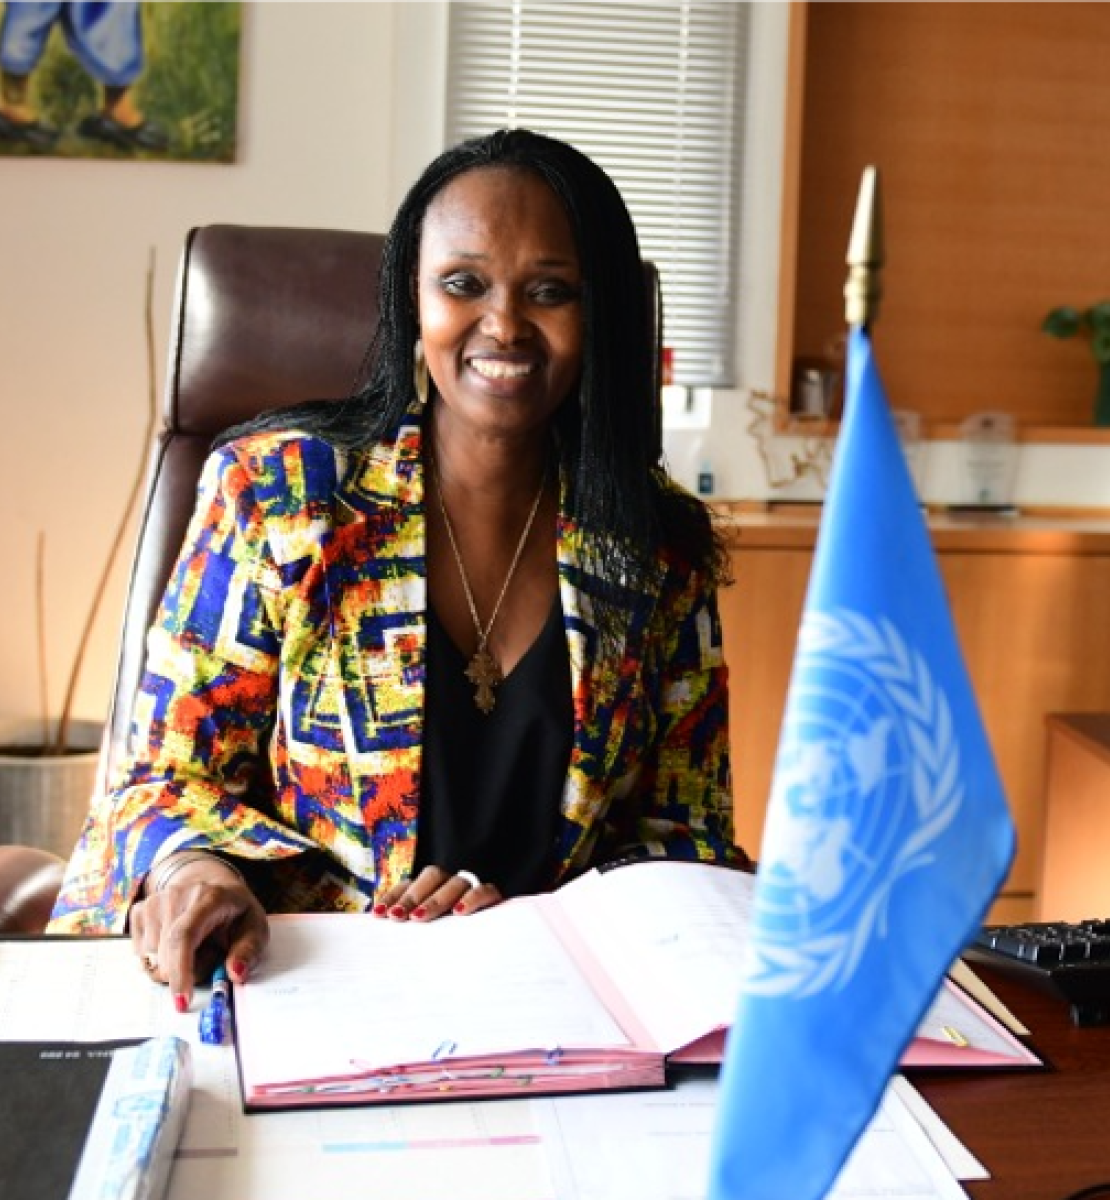 Femme dans une chemise colorée assise à un bureau avec un drapeau de l'ONU